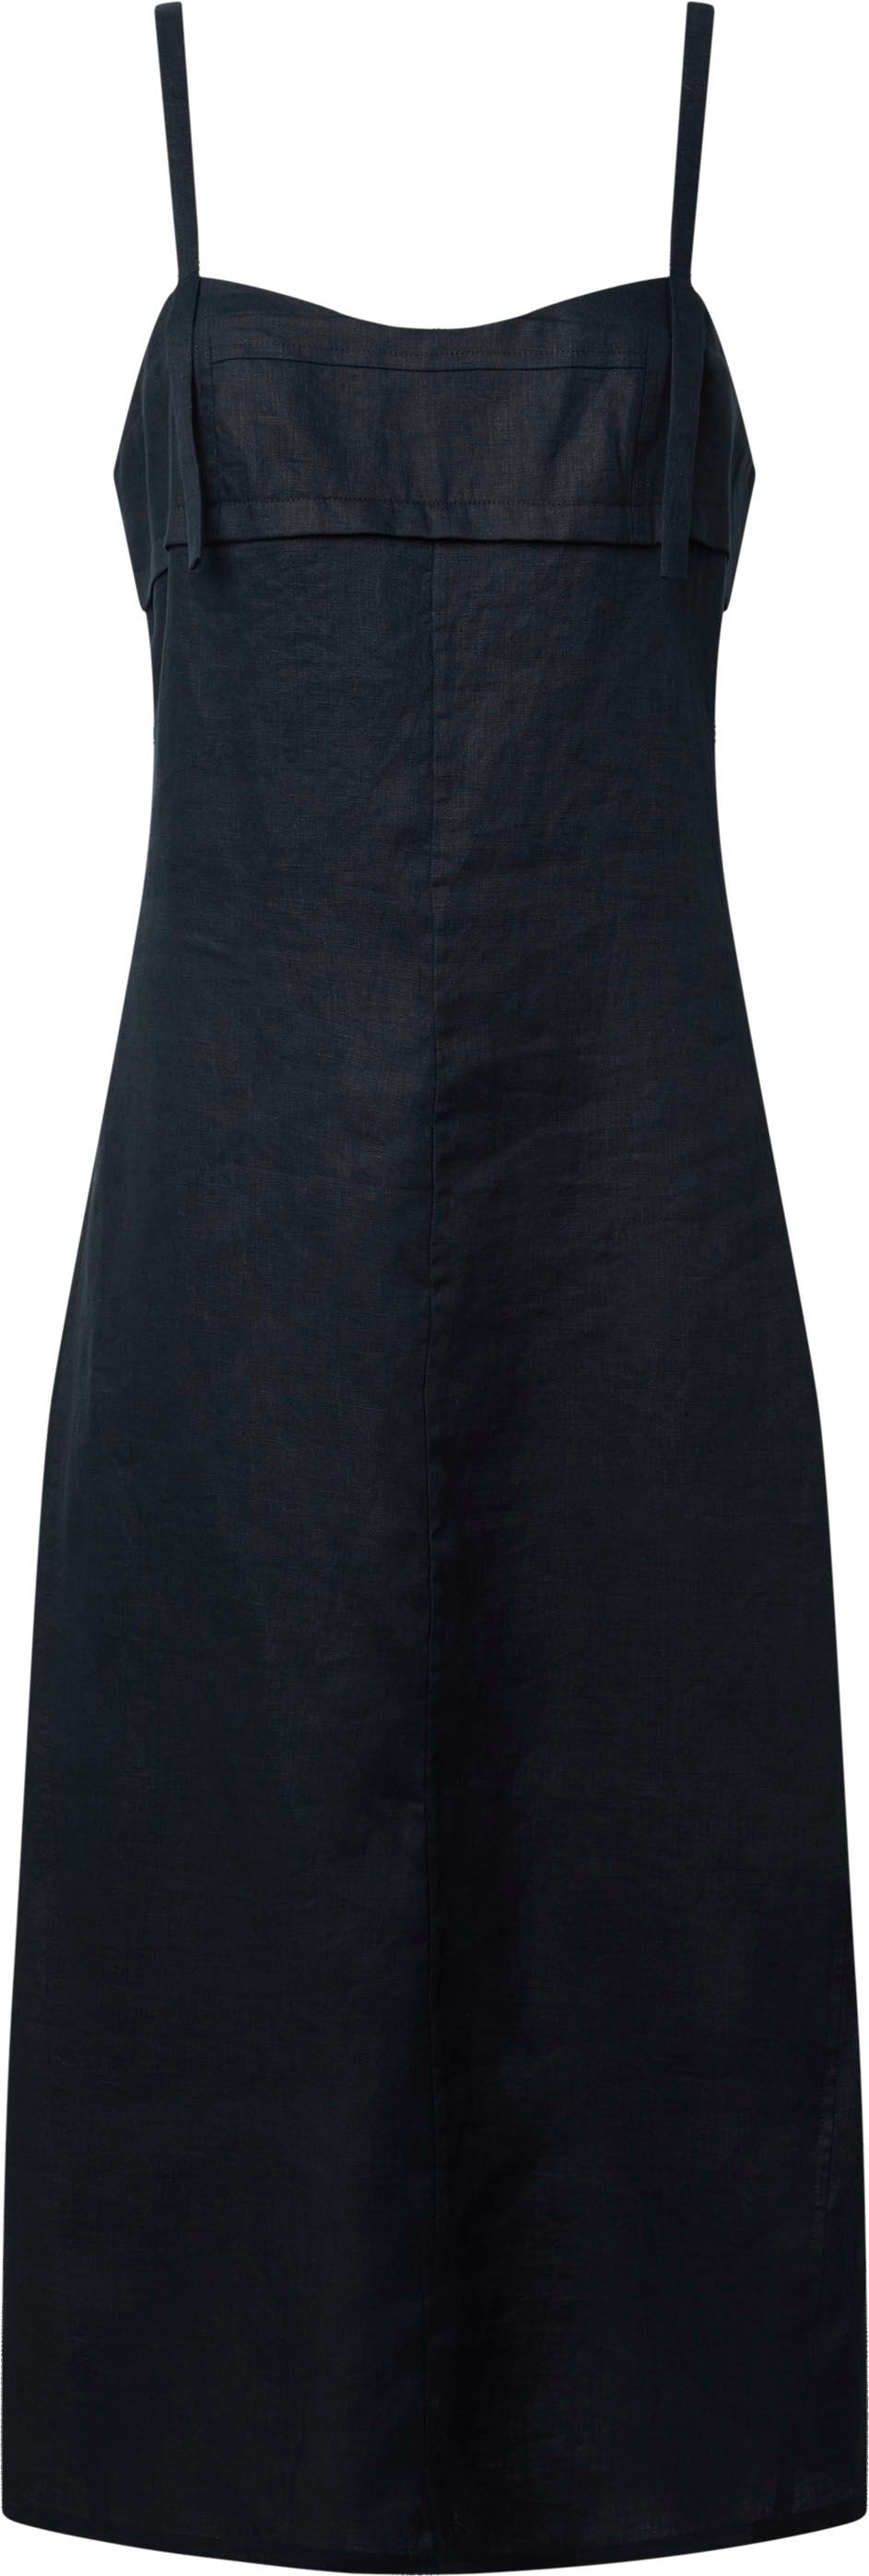 Calvin Klein Trägerkleid, mit schmalen Trägern bestellen bei OTTO